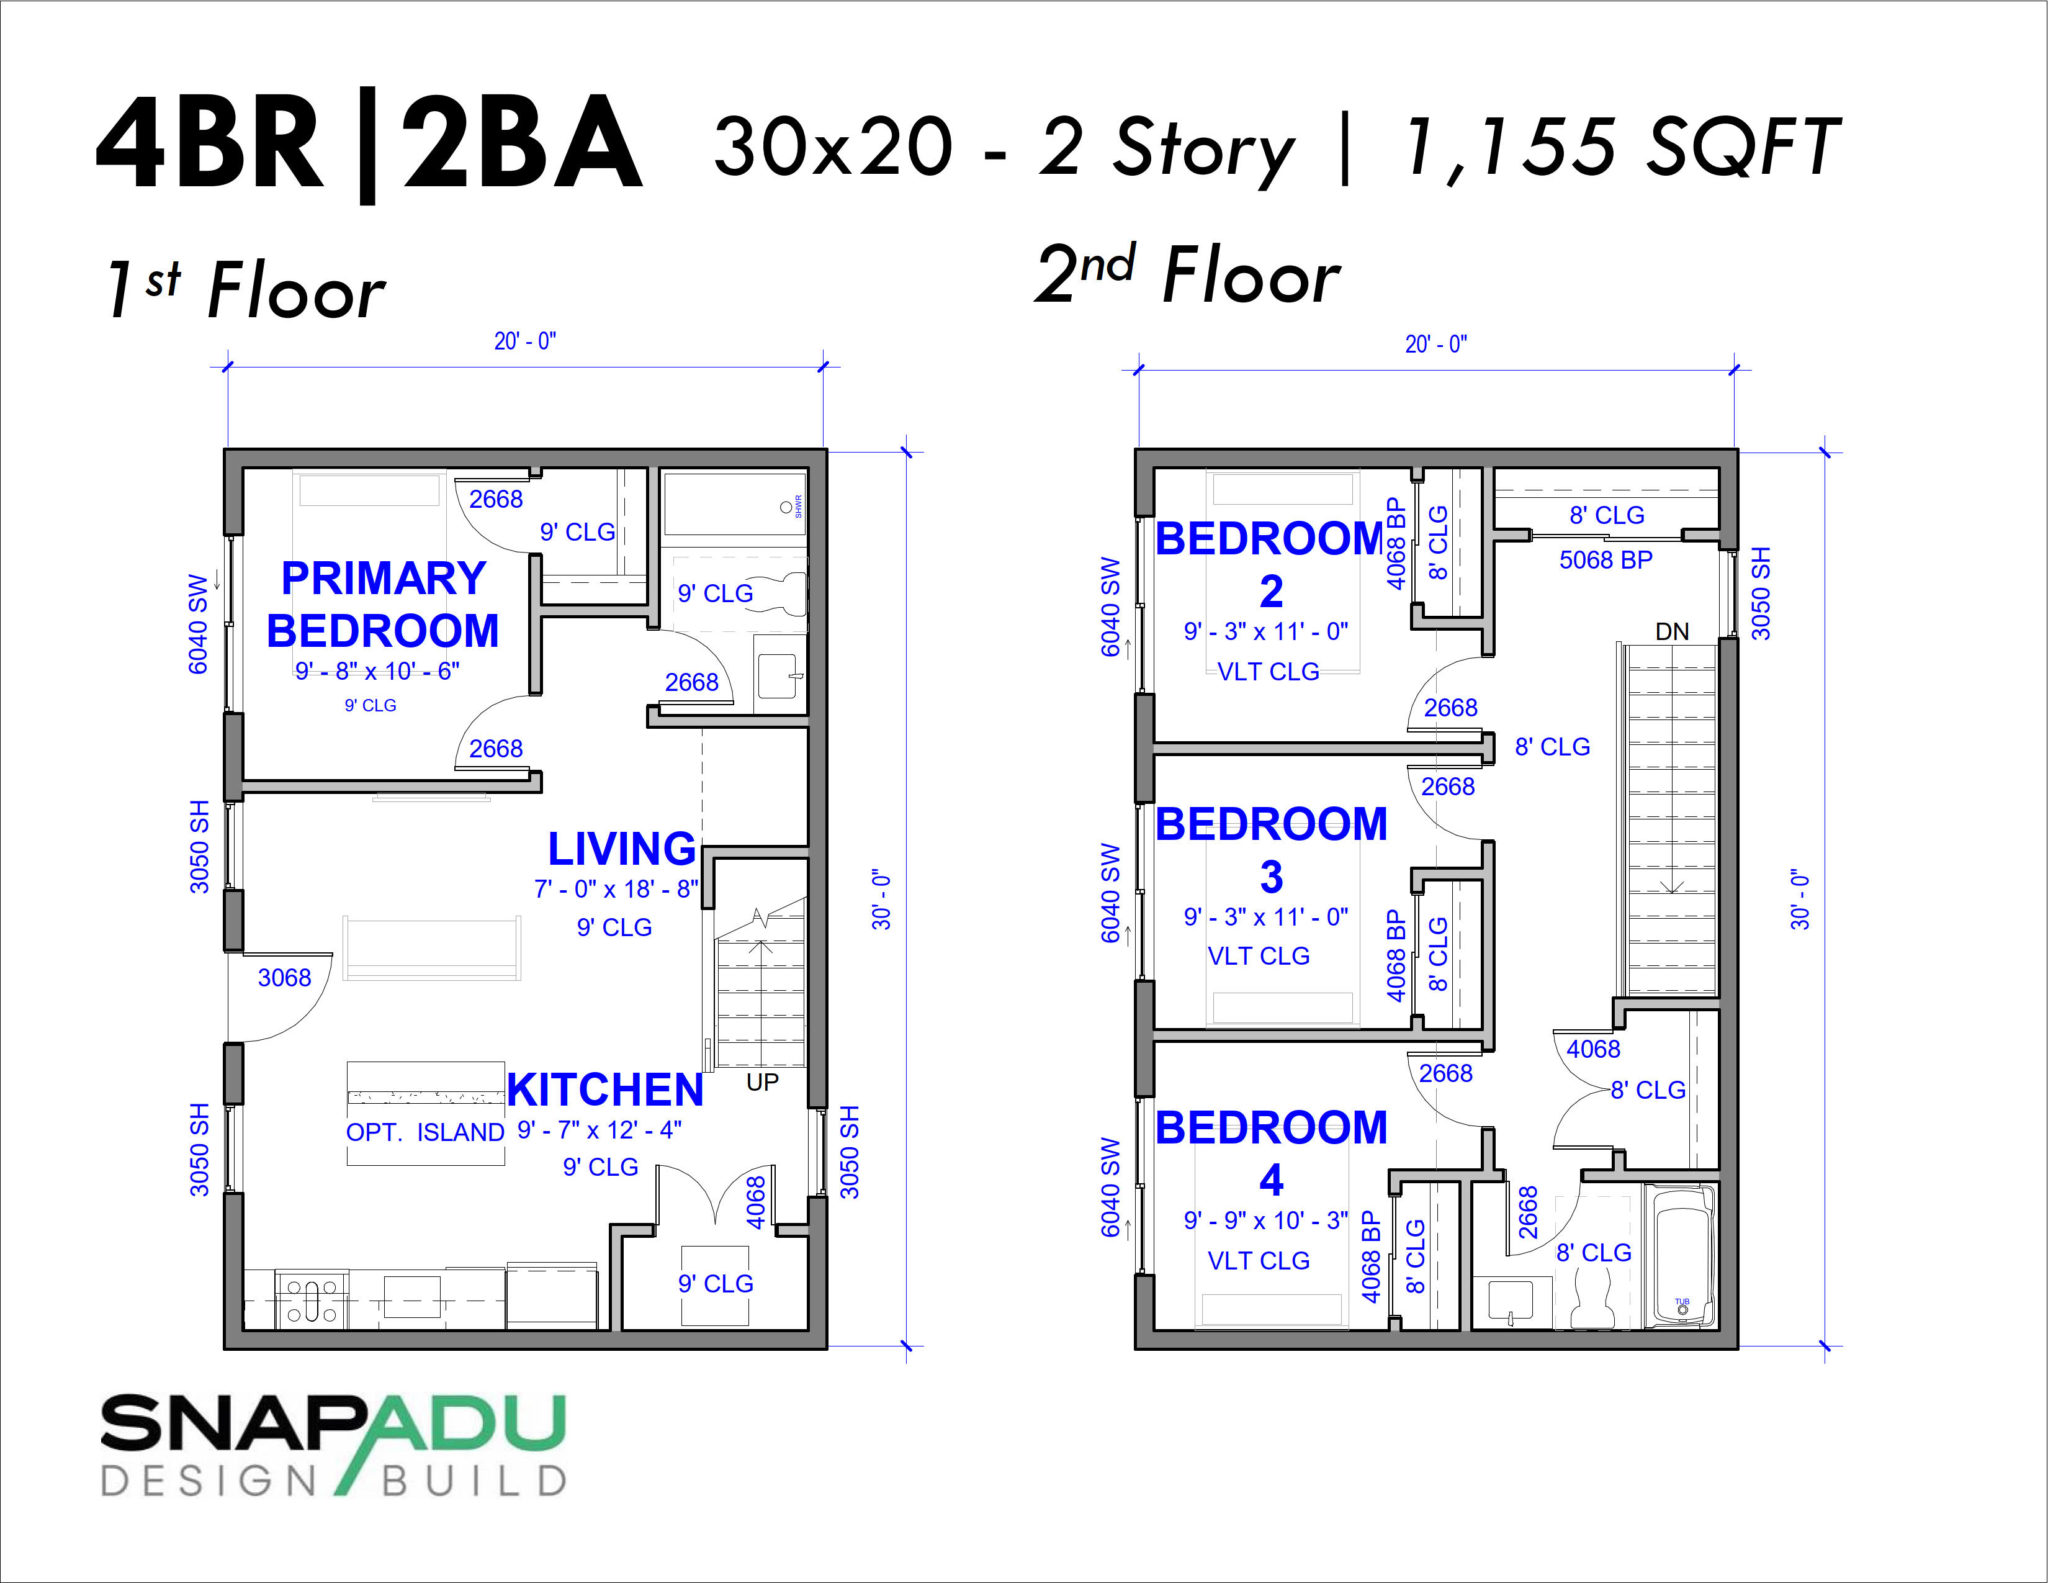 2 Story Snap ADU Floor Plan 4BR 2BA 1155 SF 30x20 1st Floor Bedroom 3 Bedrooms 1 Bath Upstairs 1200 sqft